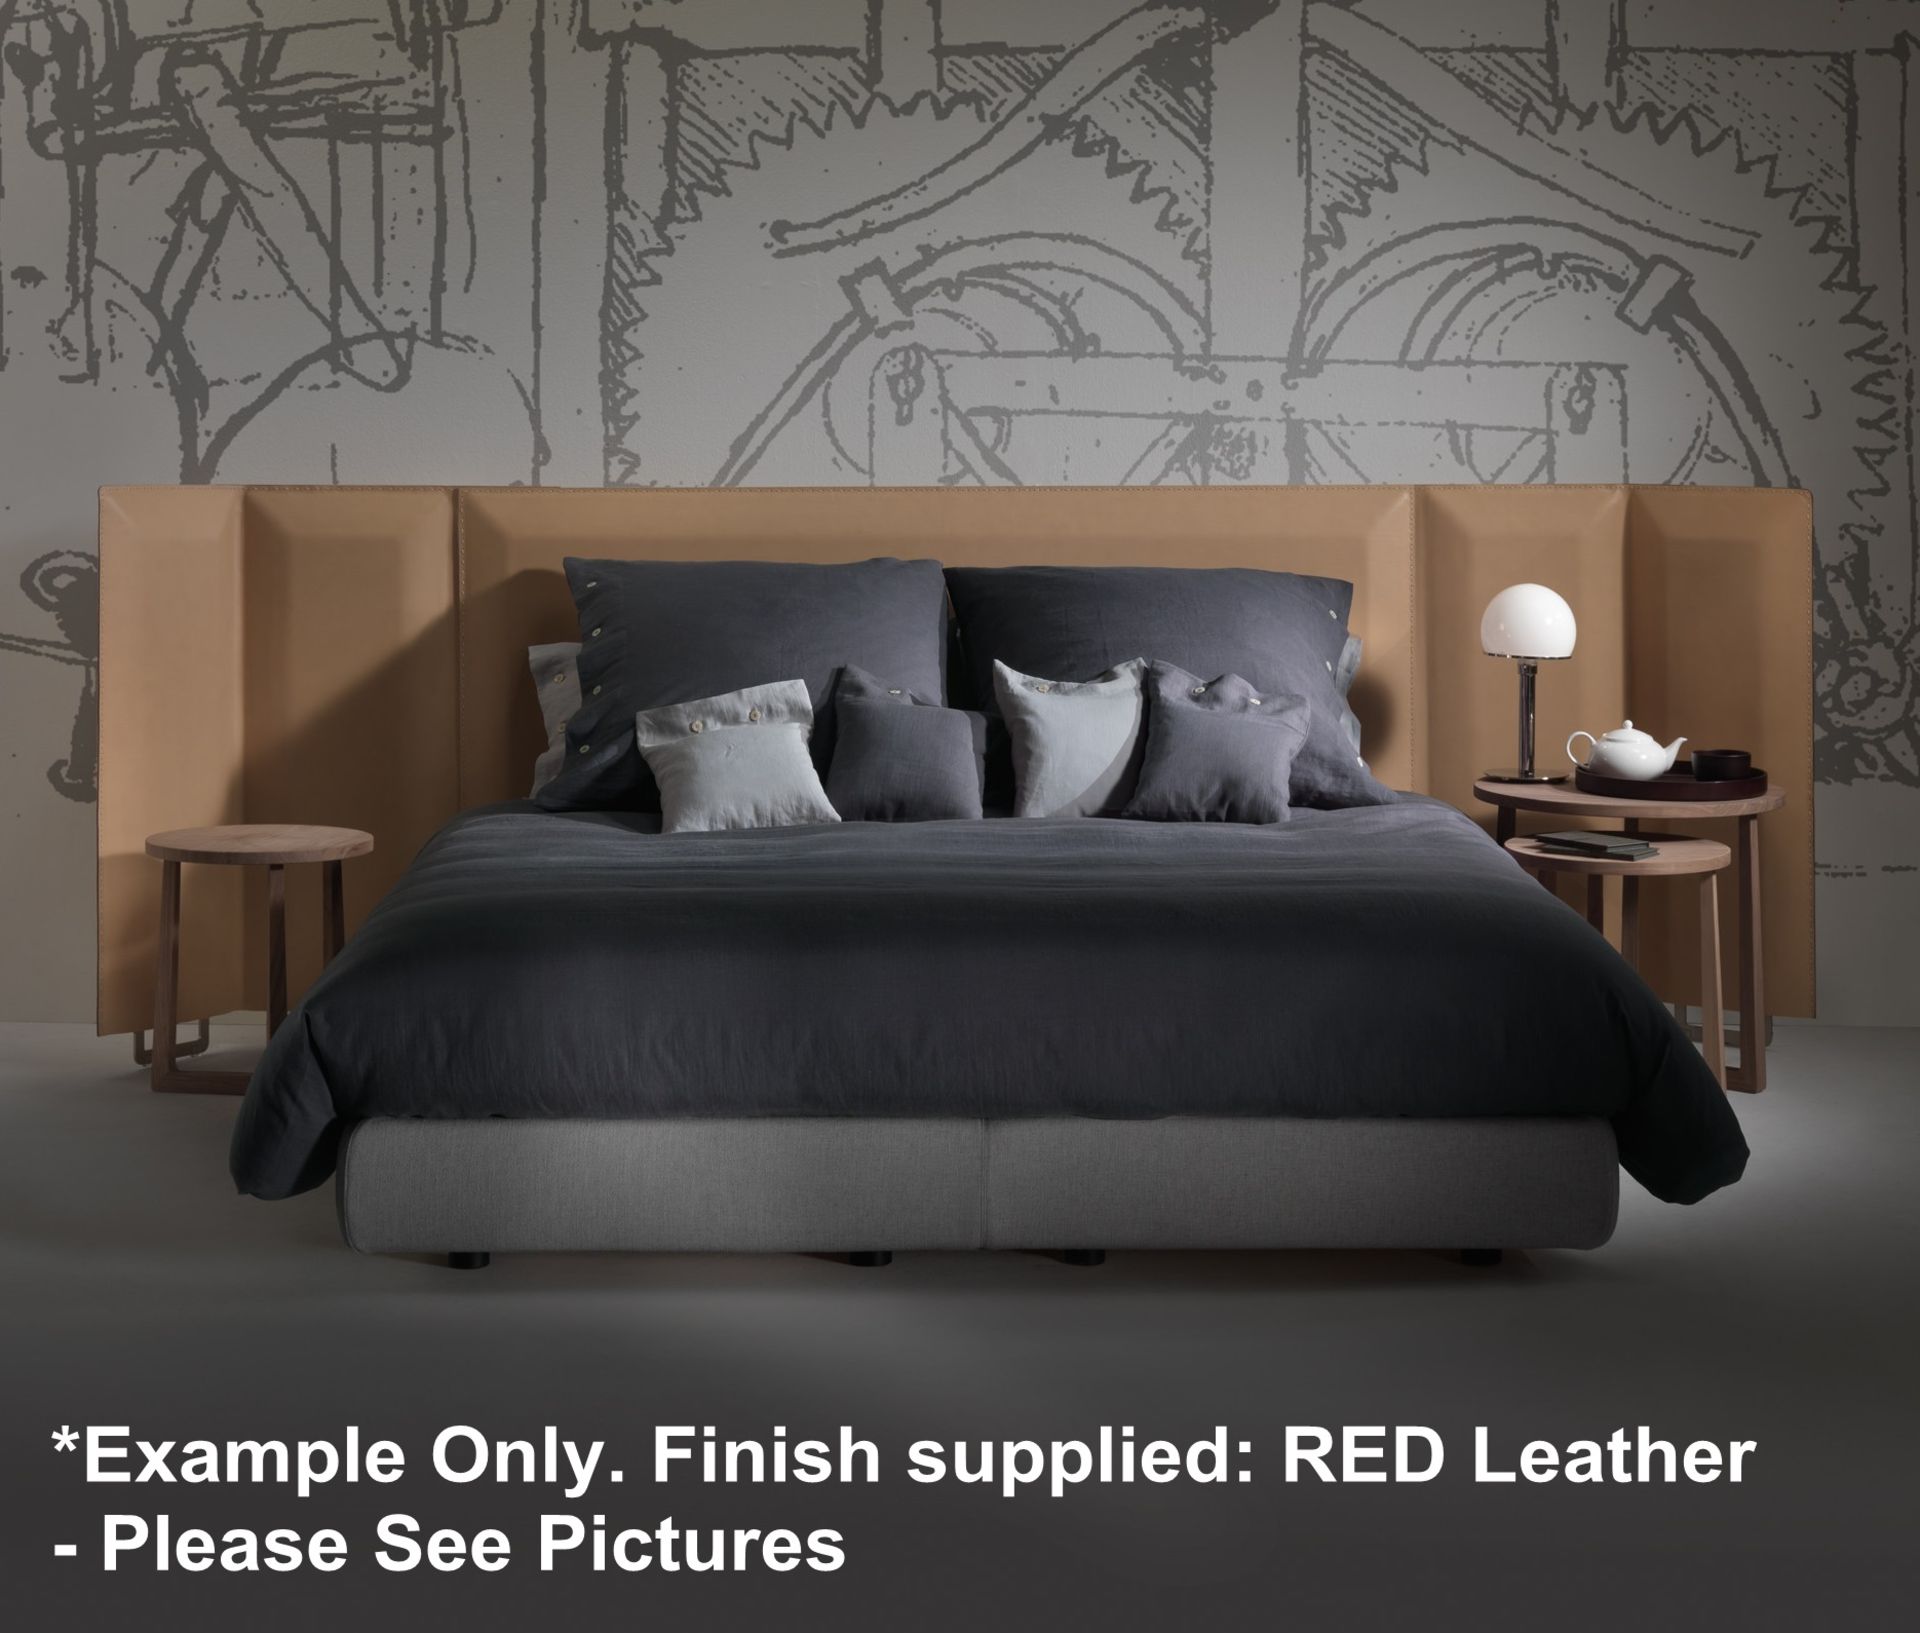 1 x FLEXFORM Eden - Storage Bed With Headboard in Red Leather - Frame Size: 175 x 210 - Ref: 3716927